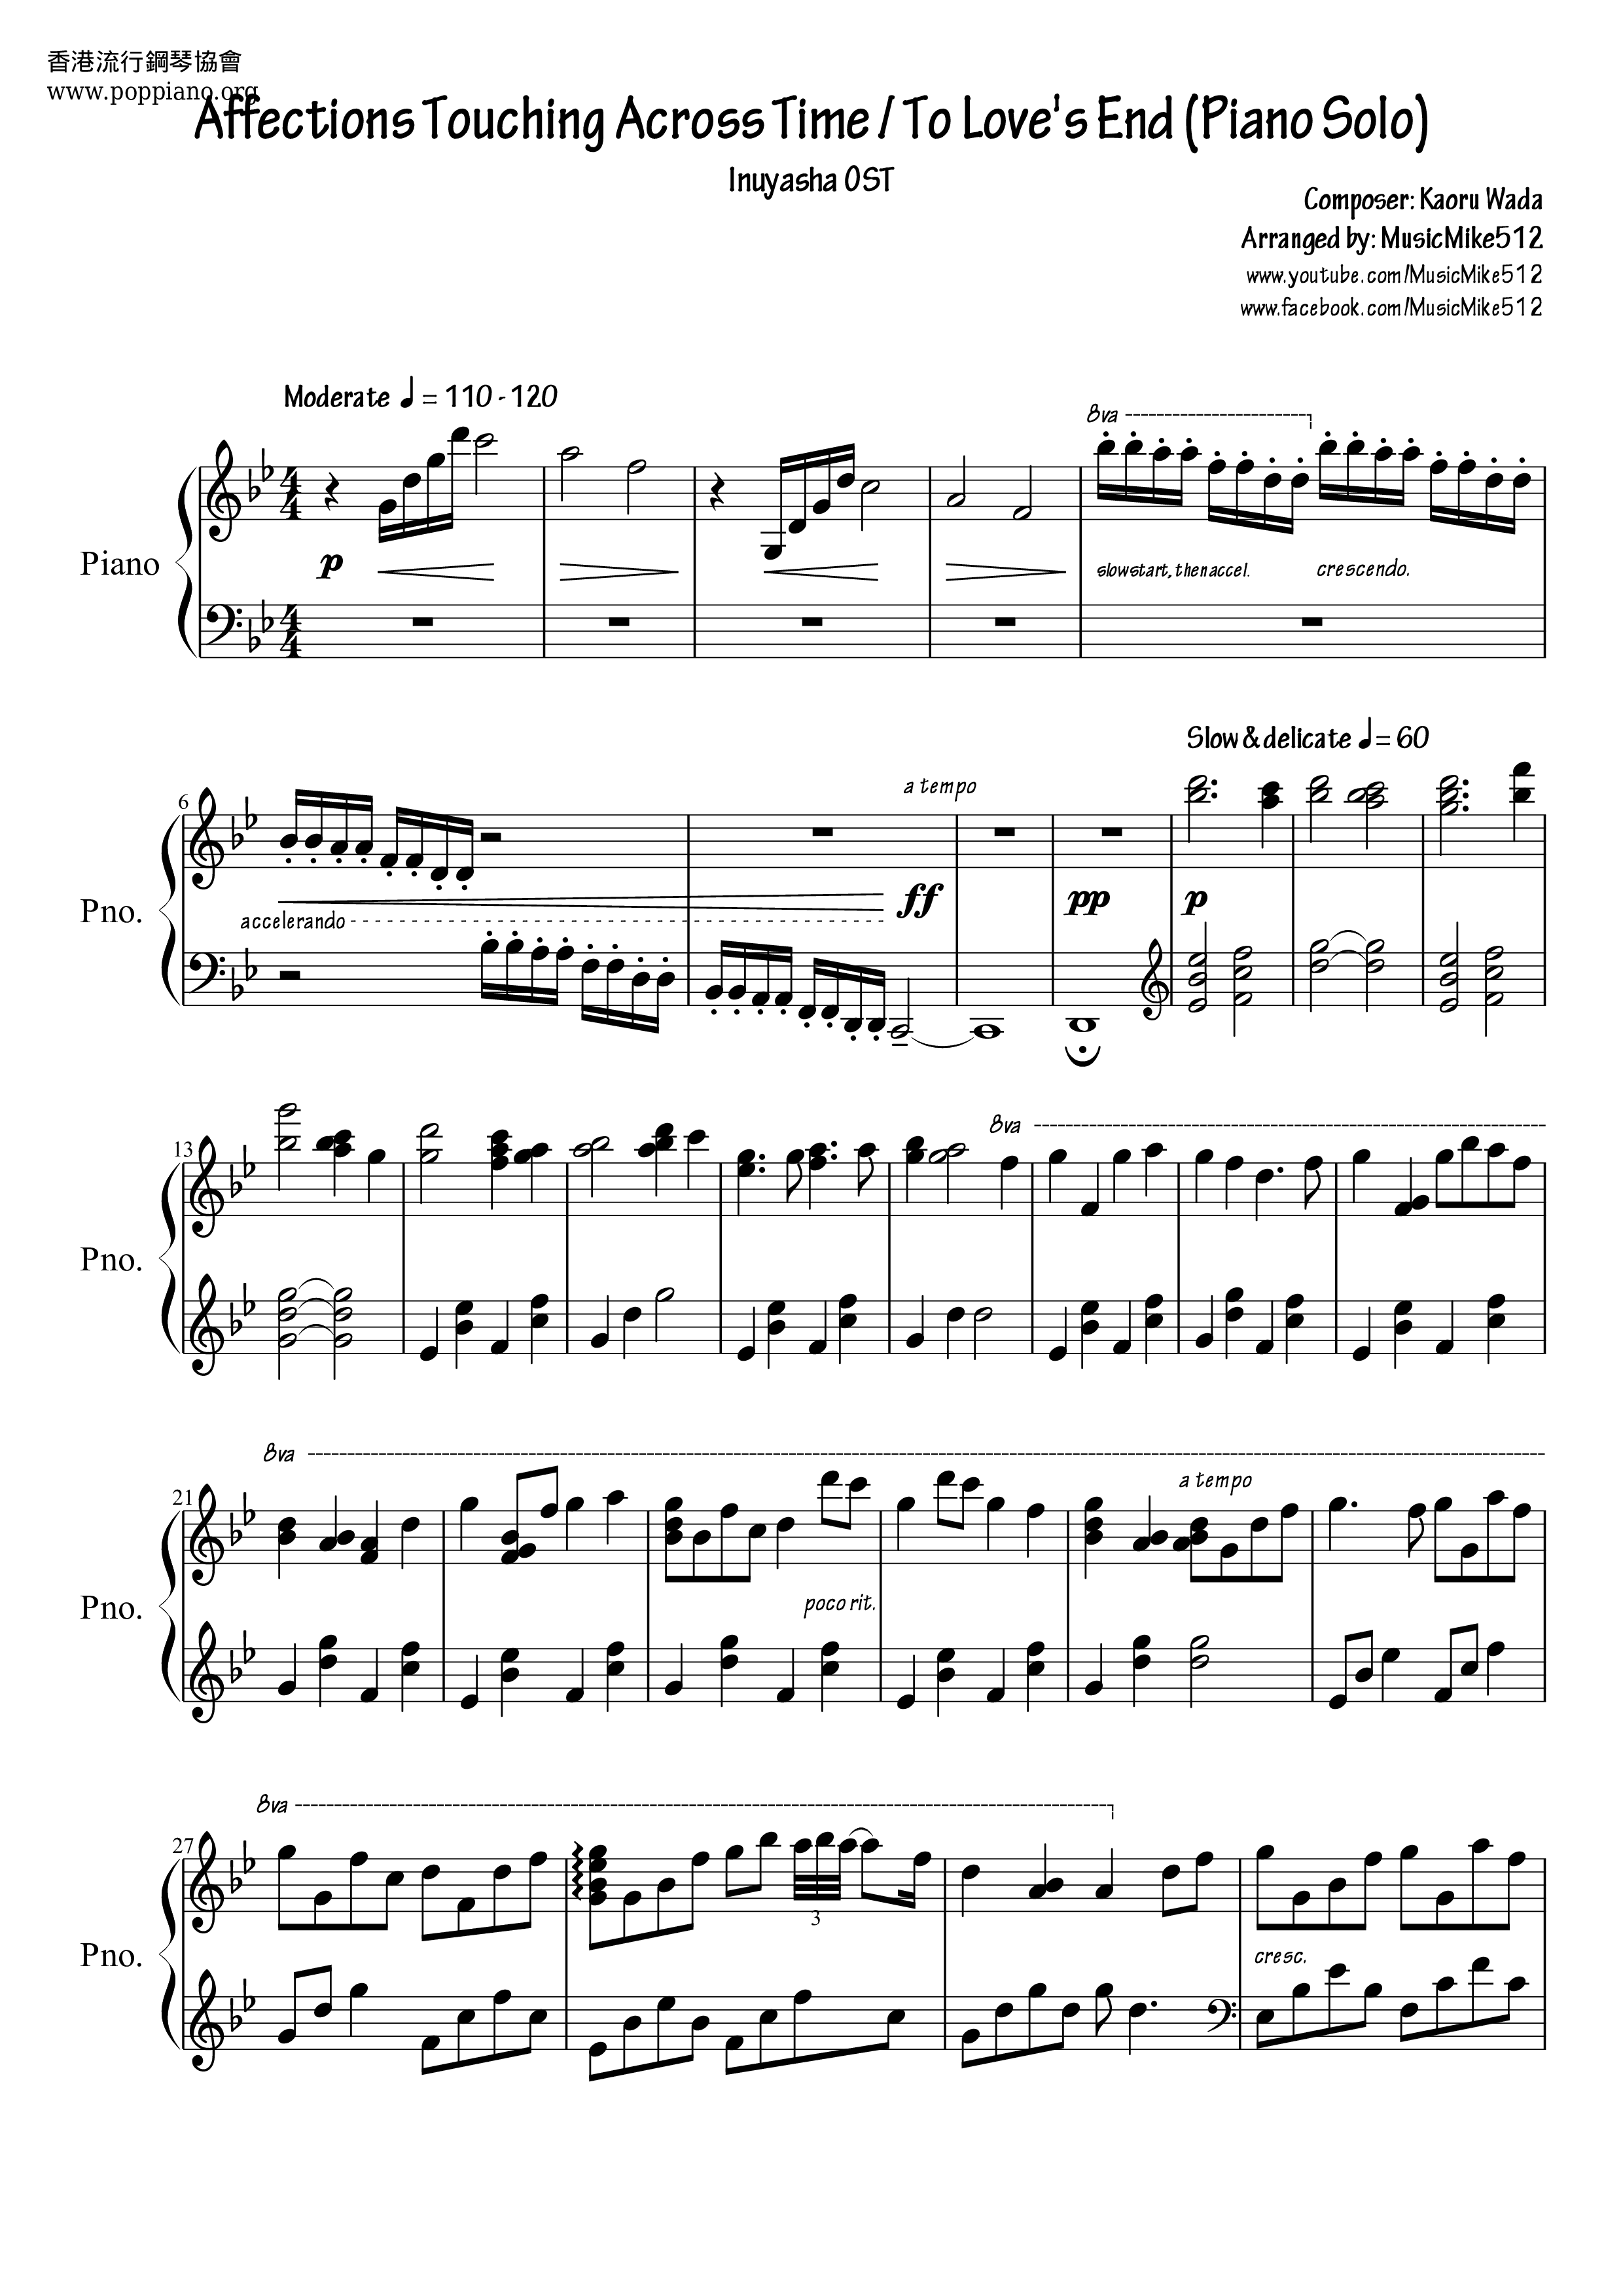 Inuyasha Score